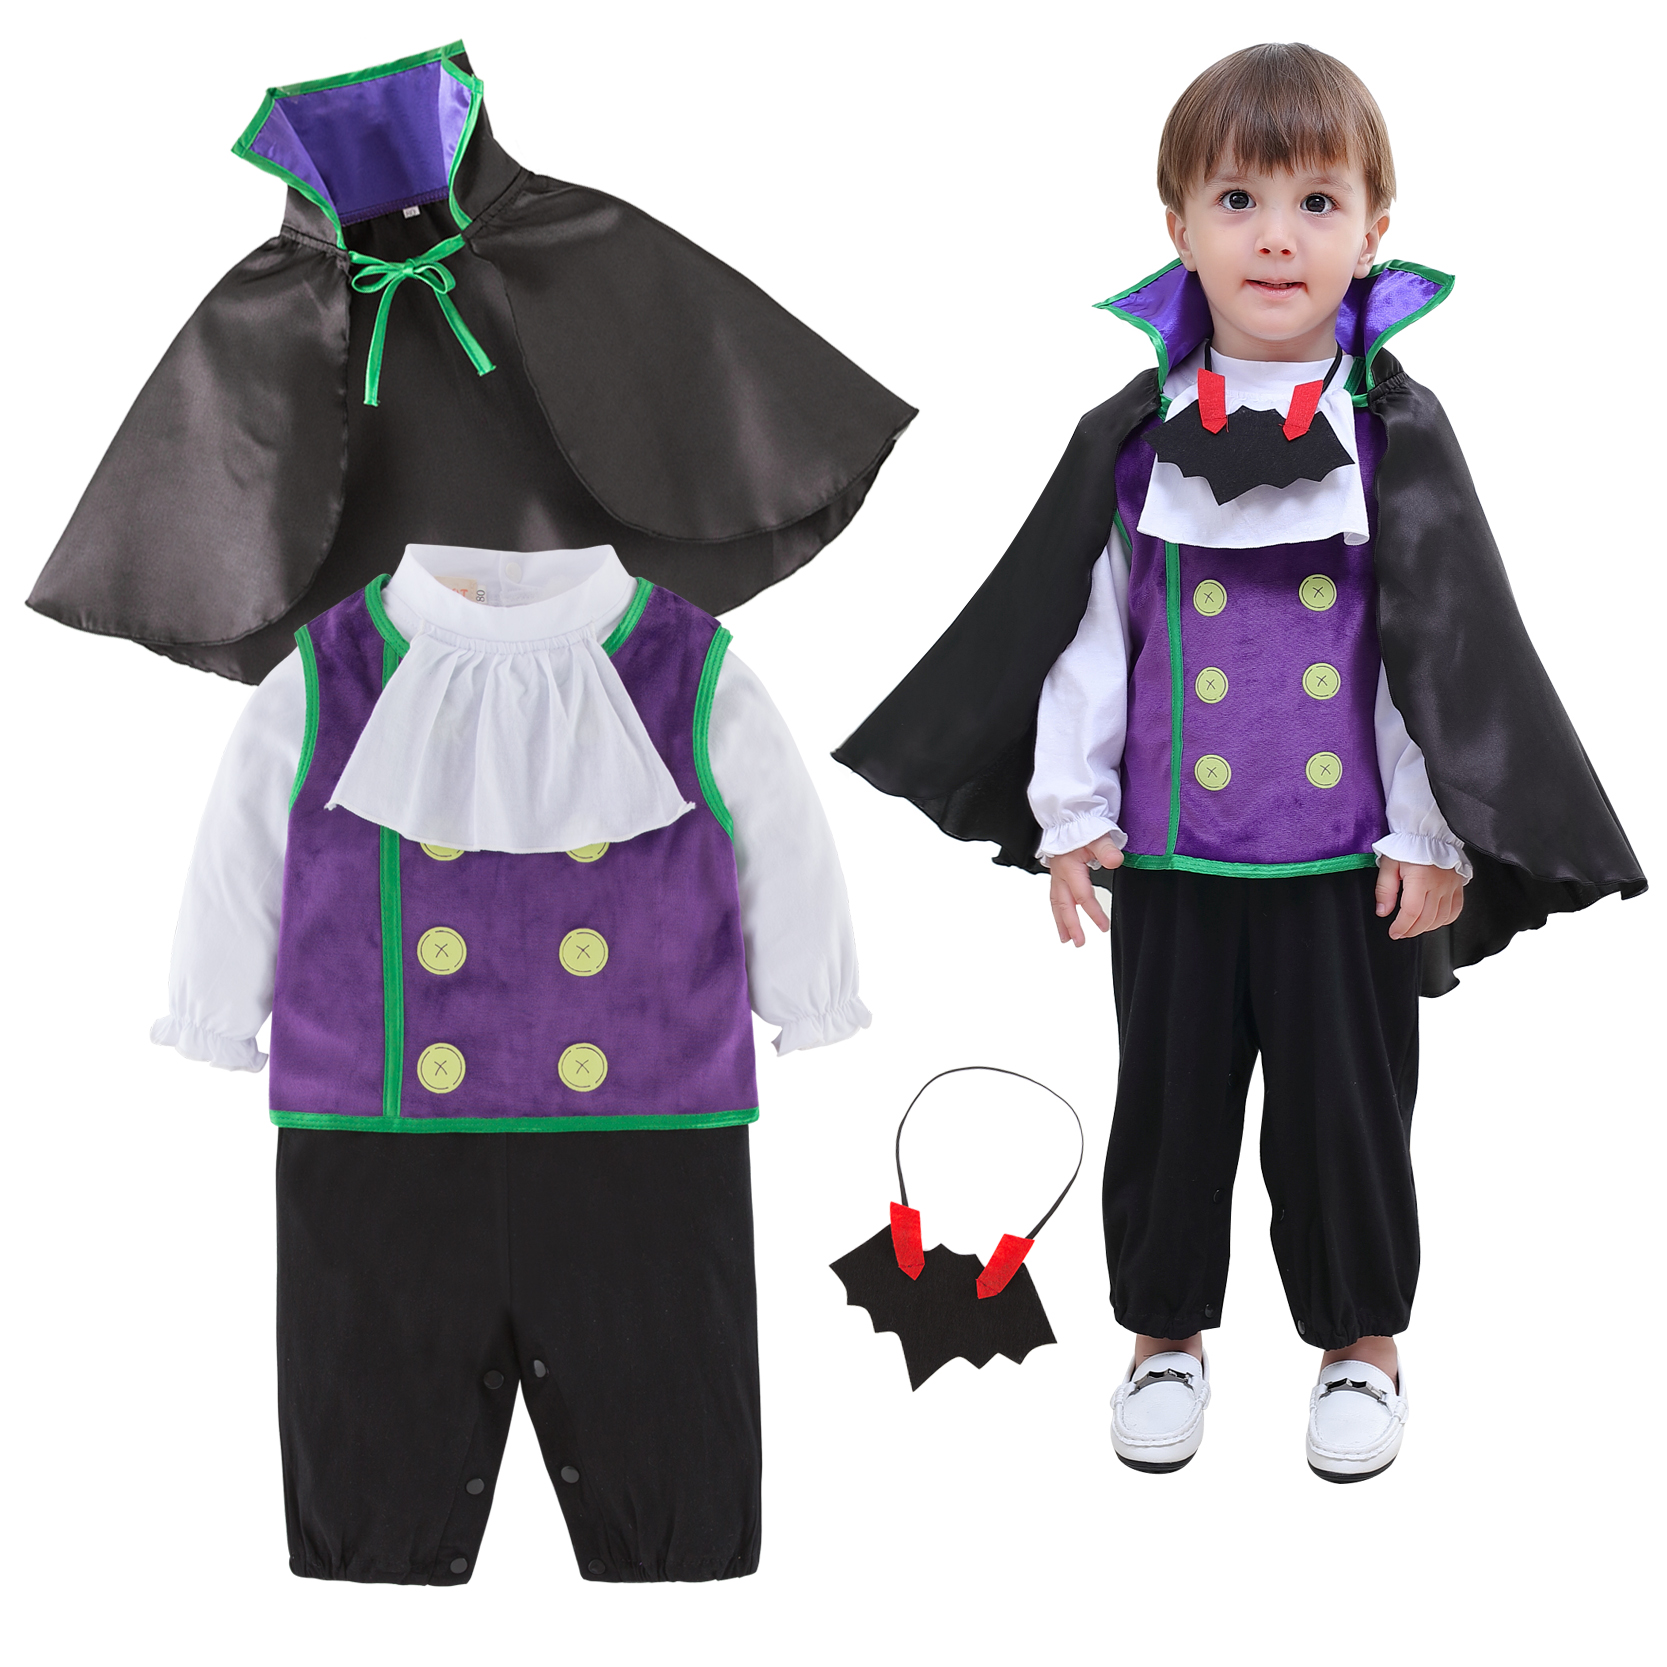 儿童表演服套装 童装 吸血鬼套装 四件套 男童长袖